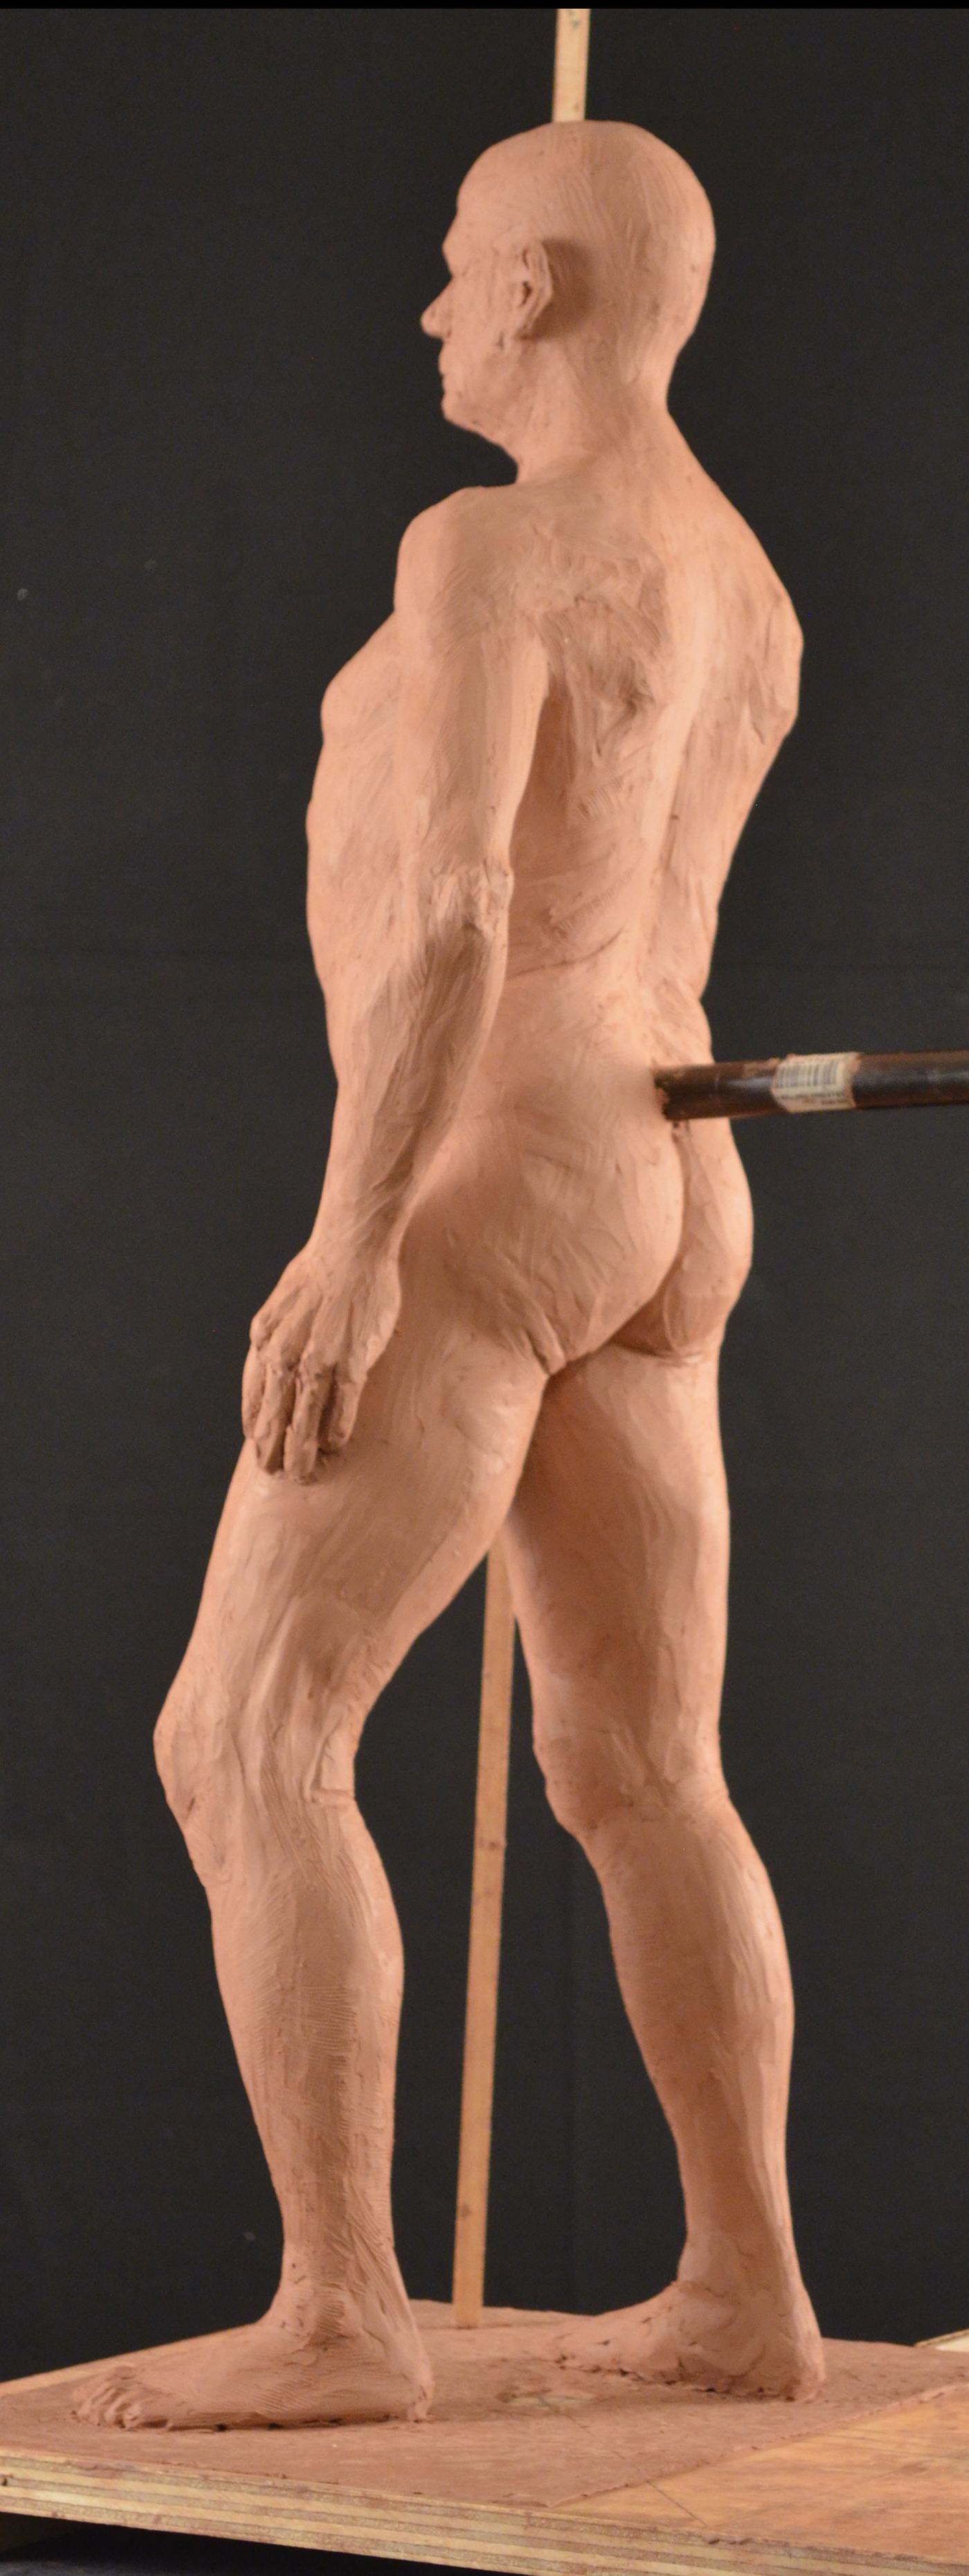 sculpting  sculpture figure model Realism portrait nude Plasticine